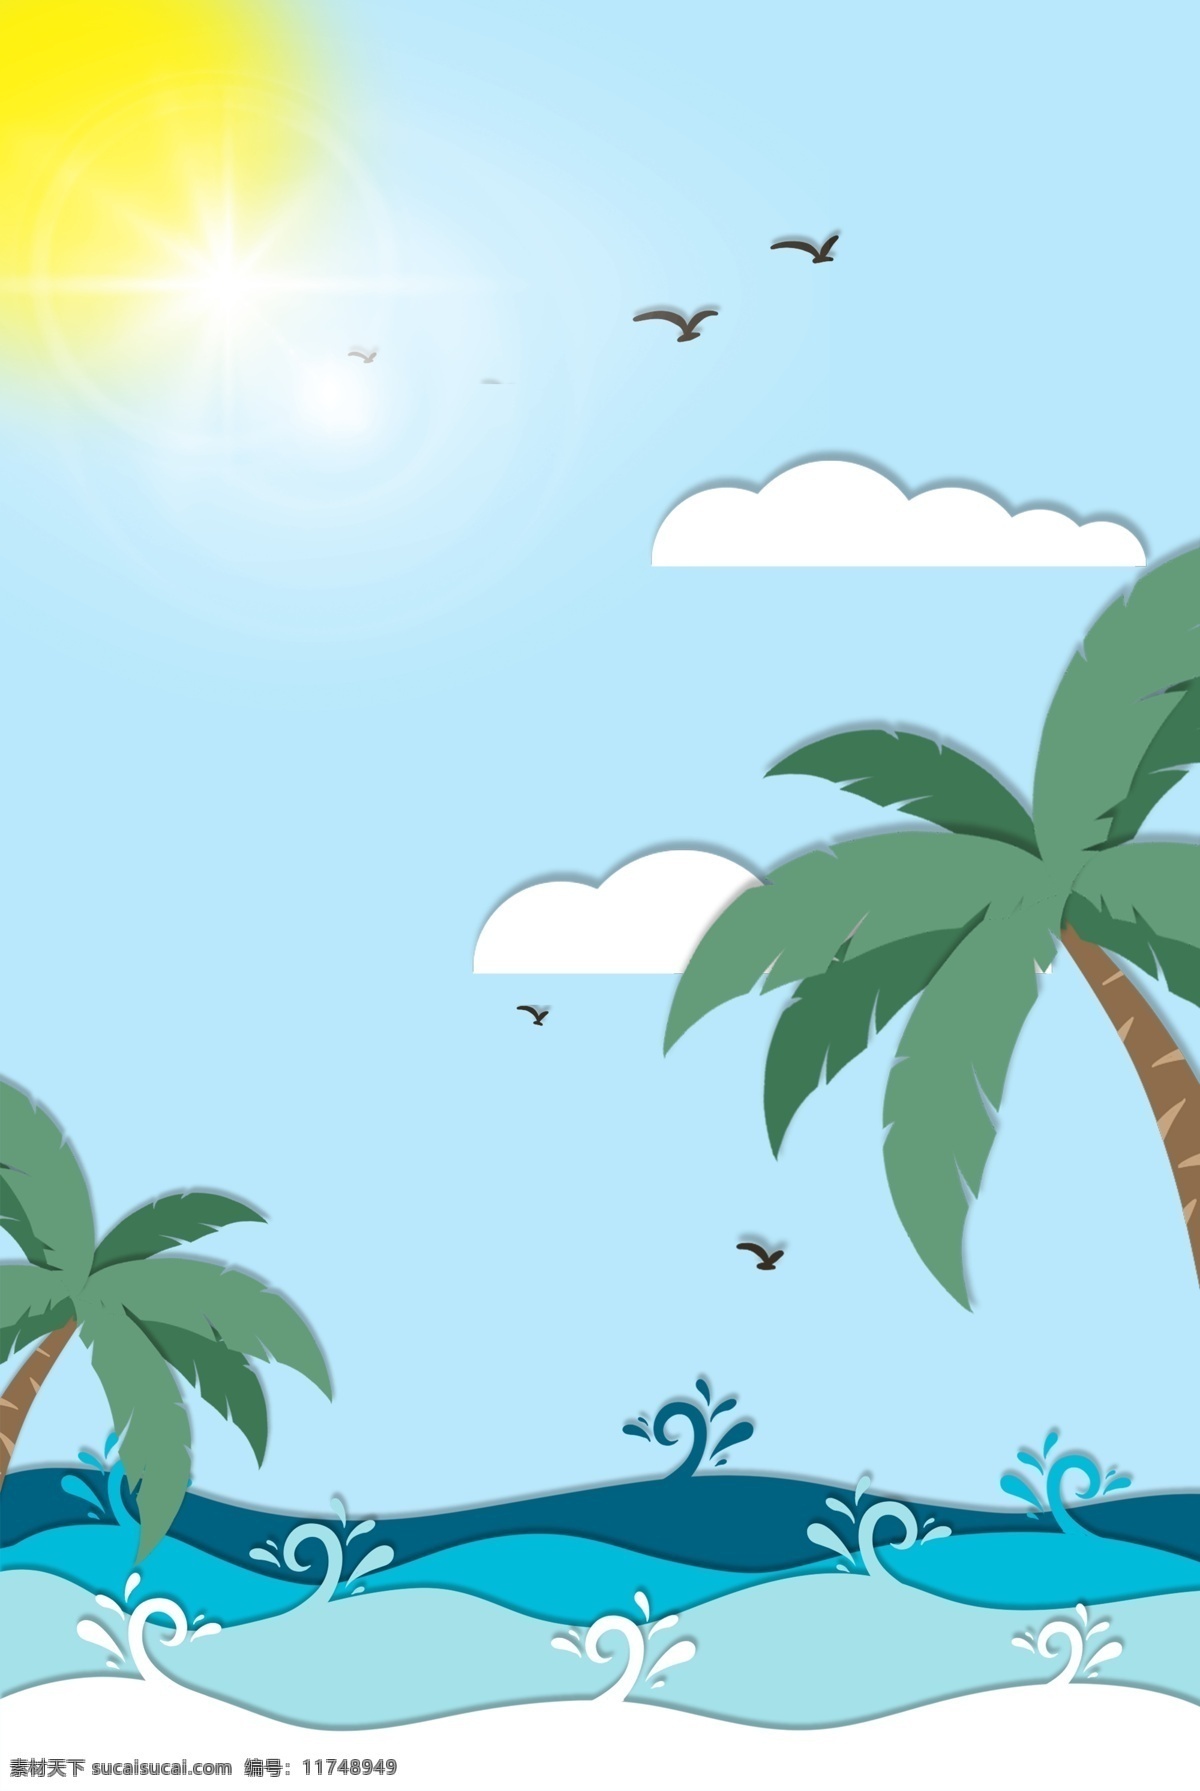 夏日 蓝天 白云 海边 旅行 创意 海报 阳光 沙滩 大海 绿叶 夏天 椰子树 蓝天白云 插画 叶子